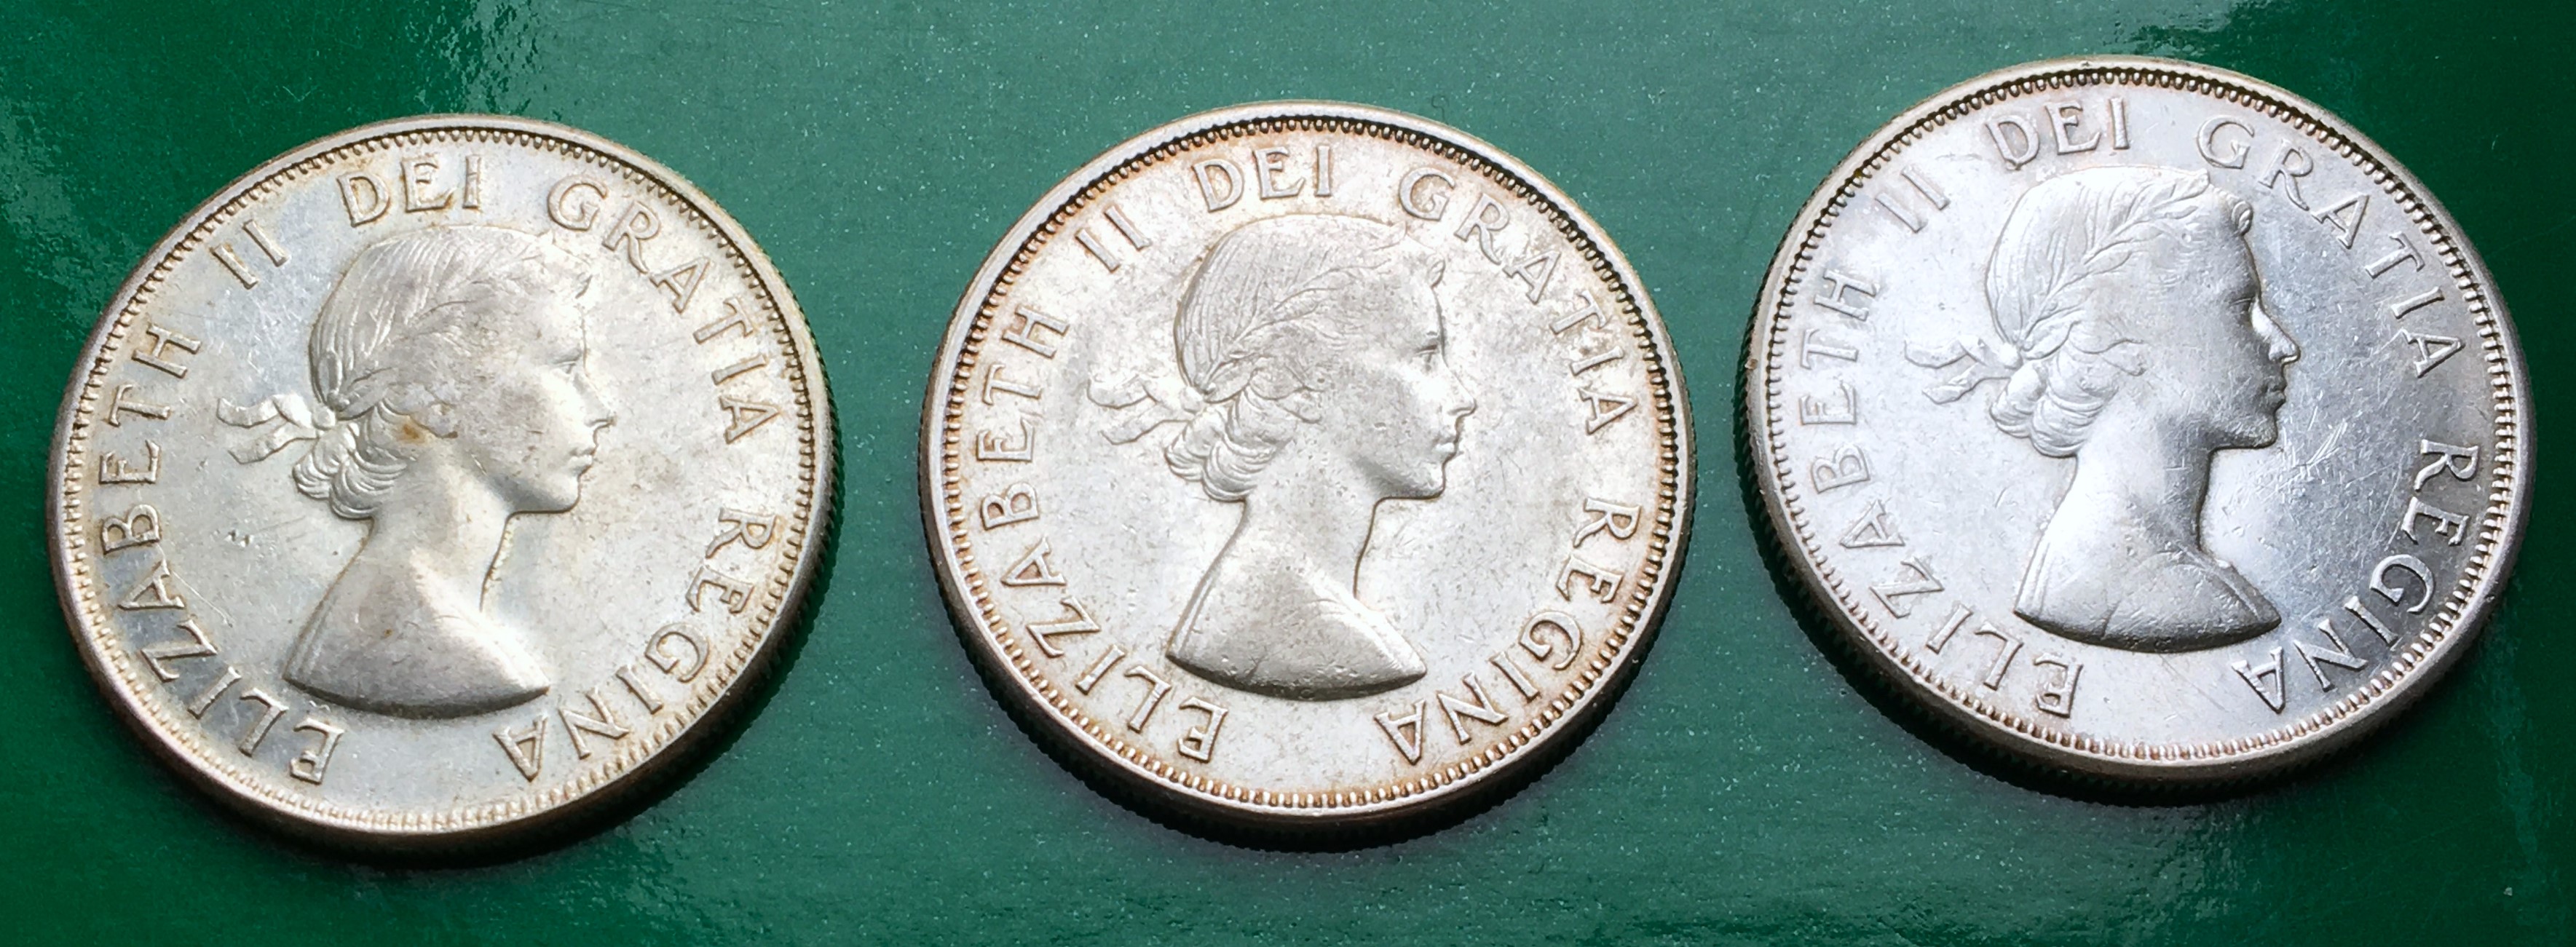 3 pièces de 50 cents avers.JPG